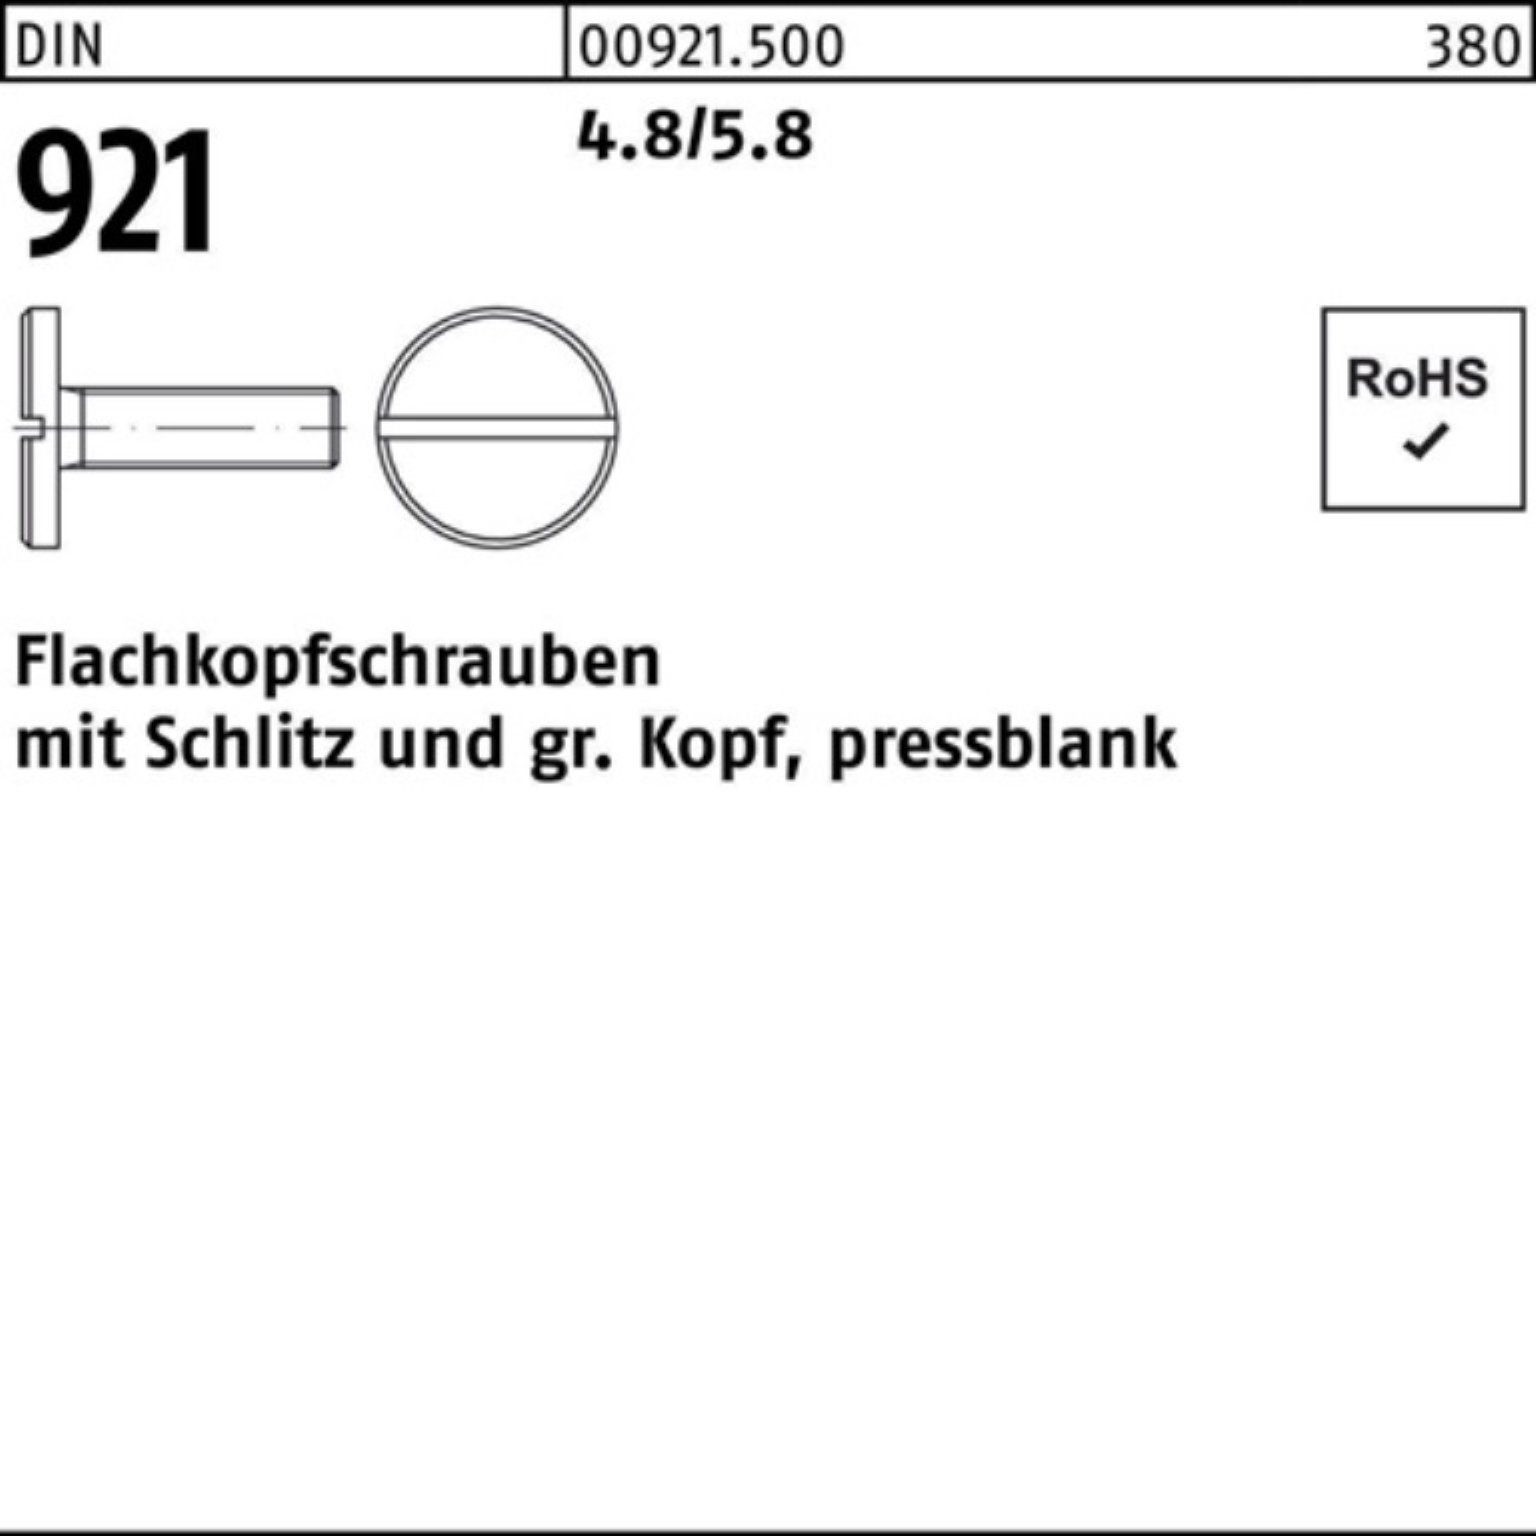 Reyher Schraube 100er Pack Flachkopfschraube DIN 921 Schlitz M5x 12 4.8/5.8 100 Stück